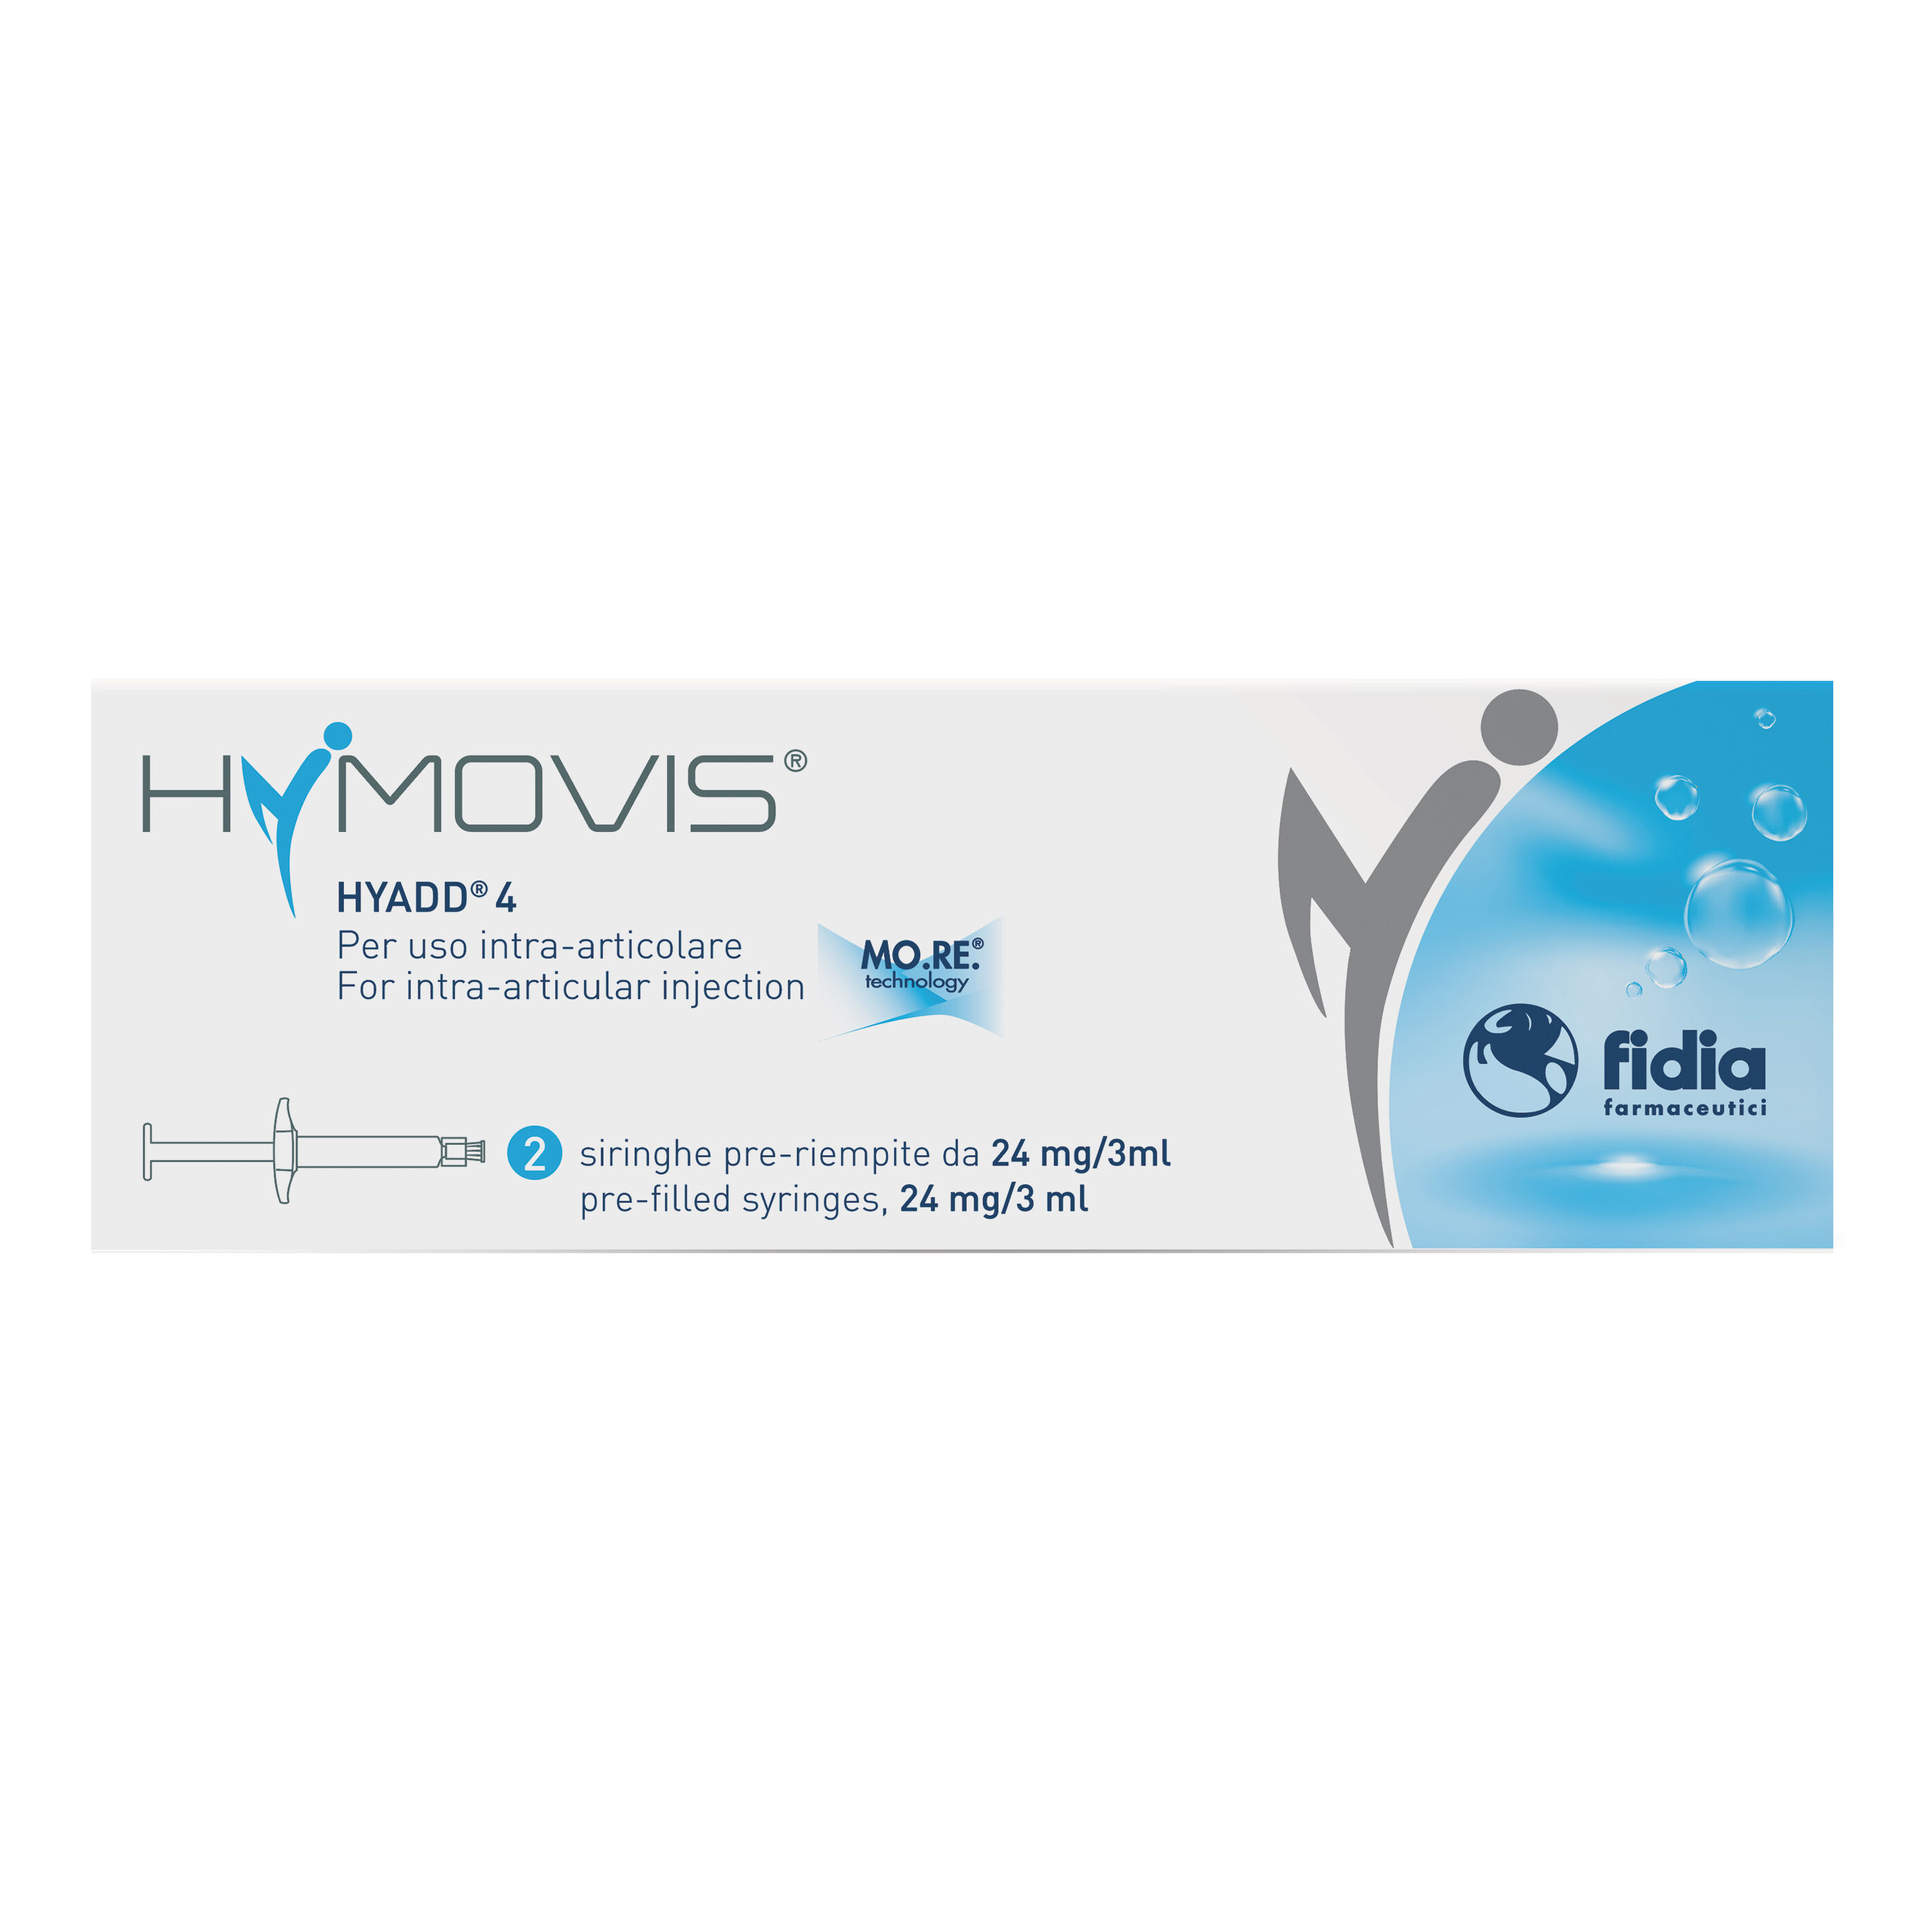 Fidia Farmaceutici Spa Hymovis 2 Siringhe Pre - Riempite 24mg